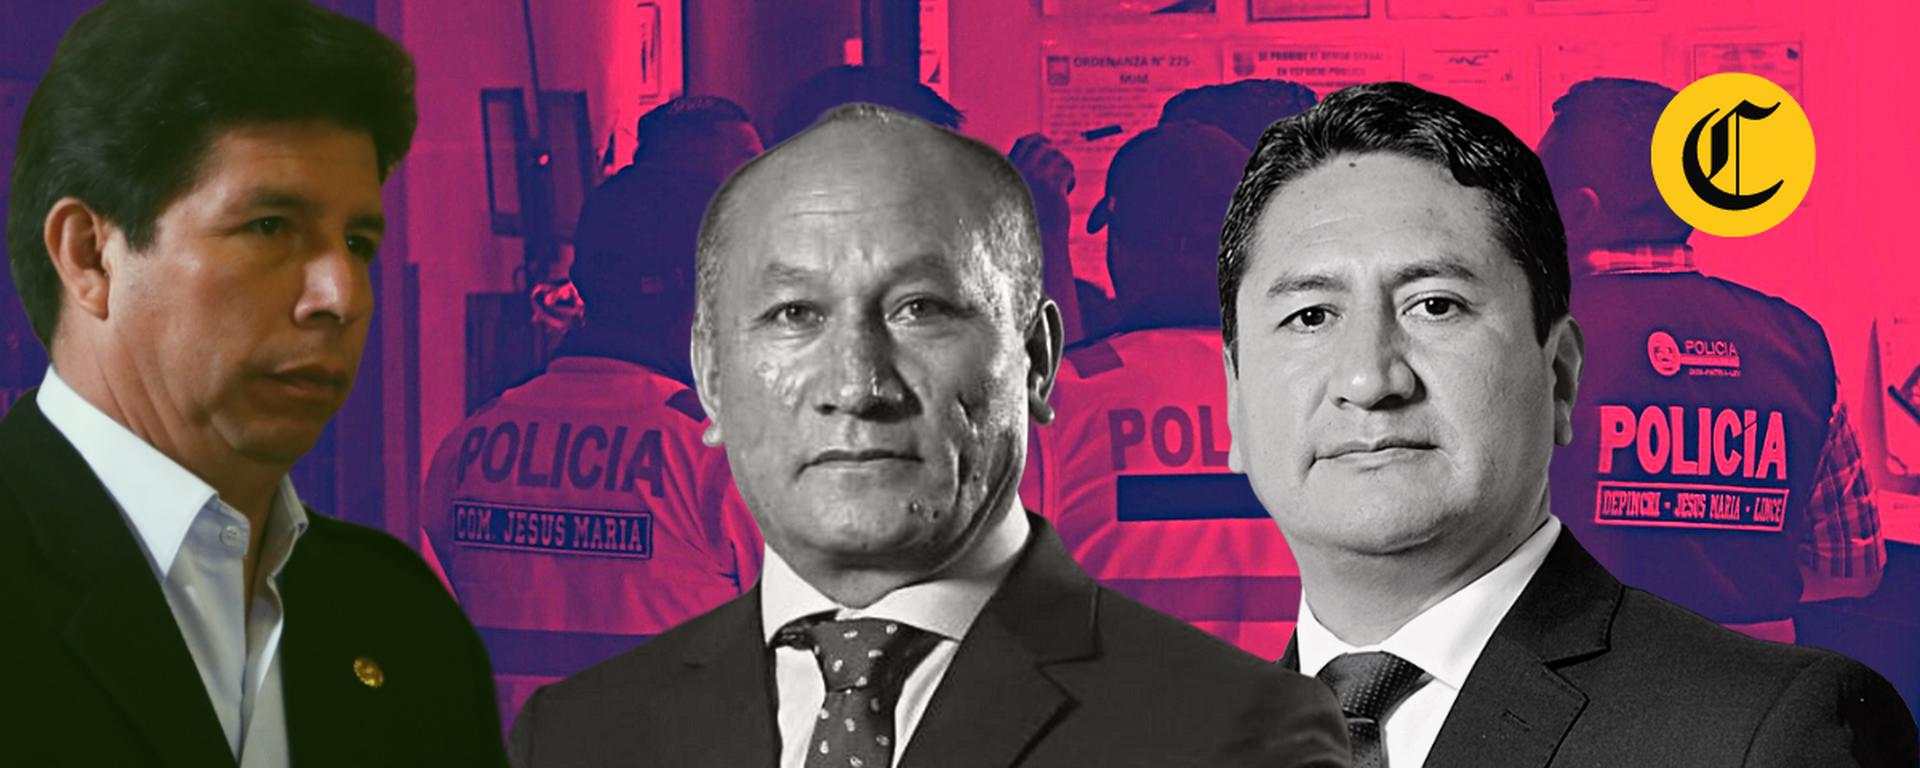 Fray Vásquez se entrega a la justicia: ¿qué políticos ligados a Pedro Castillo siguen en la clandestinidad?